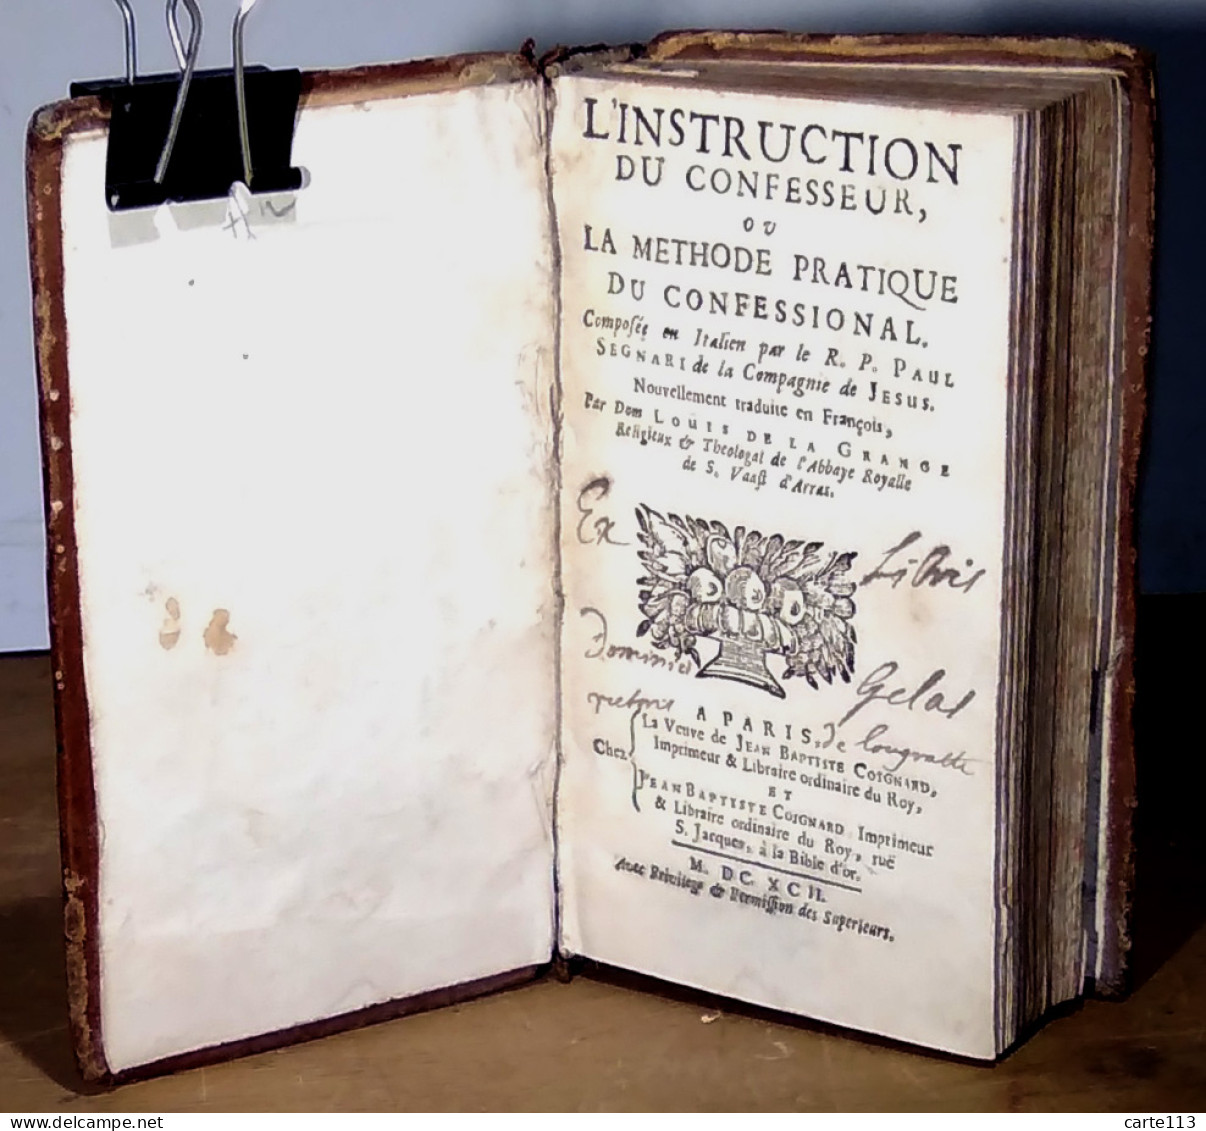 SEGNERI Paolo - L'INSTRUCTION DU CONFESSEUR  OU  LA METHODE PRATIQUE DU CONFESSIONAL - Before 18th Century